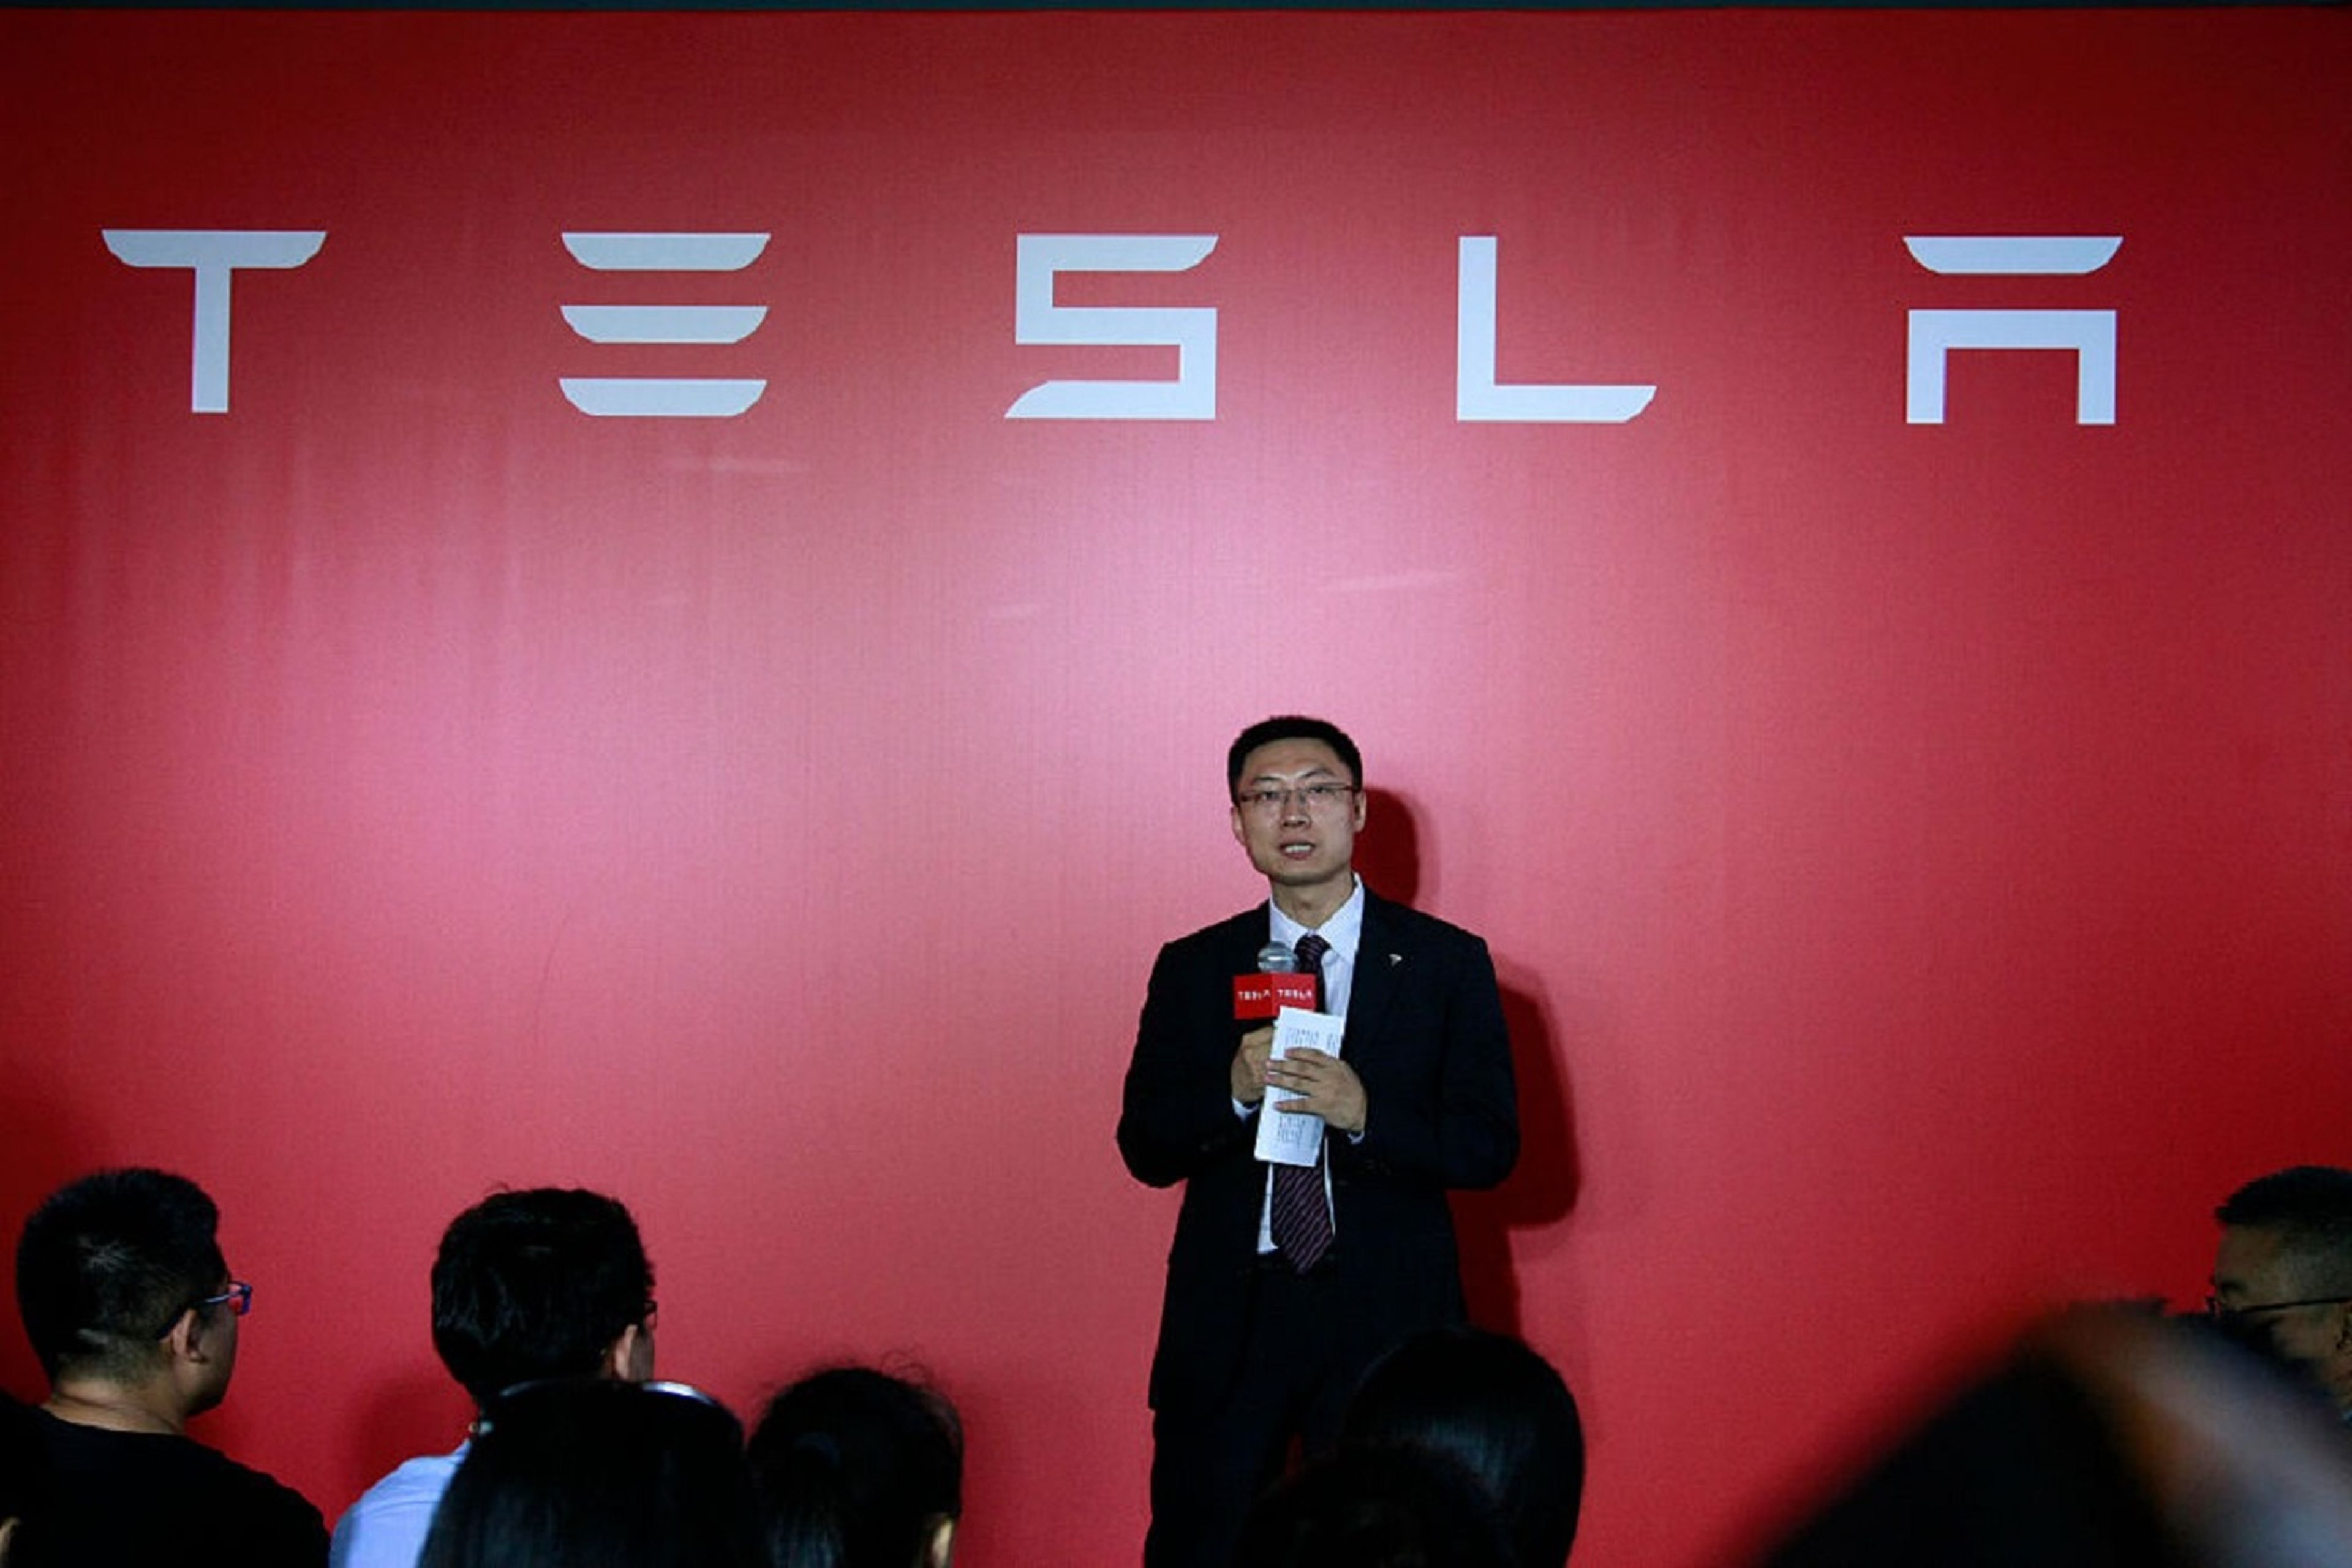 Ascenso para el nuevo año: el jefe de Telsa China, Tom Zhu, será en el futuro el número 2 tras Elon Musk.